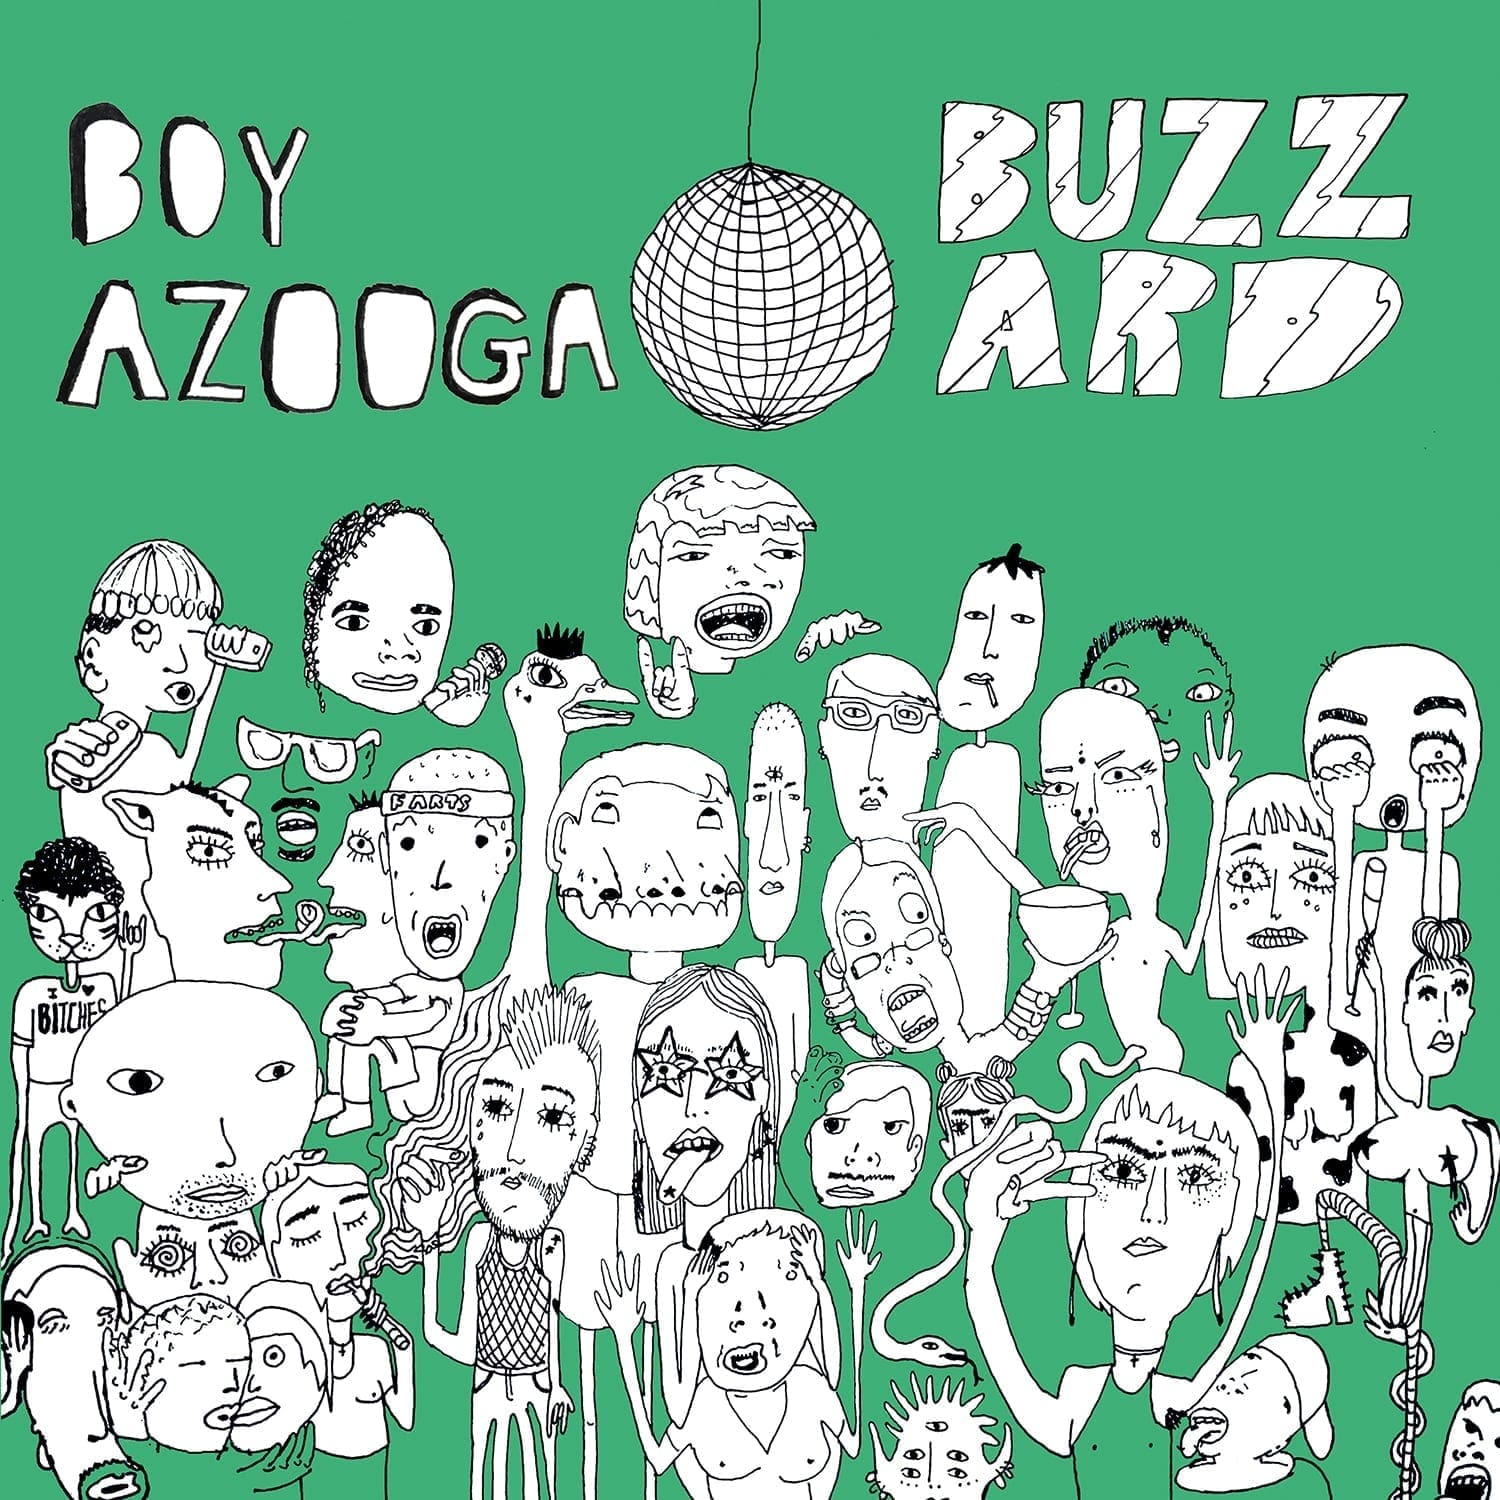 Boy Azooga / Buzzard Buzzard Buzzard - Split 12"